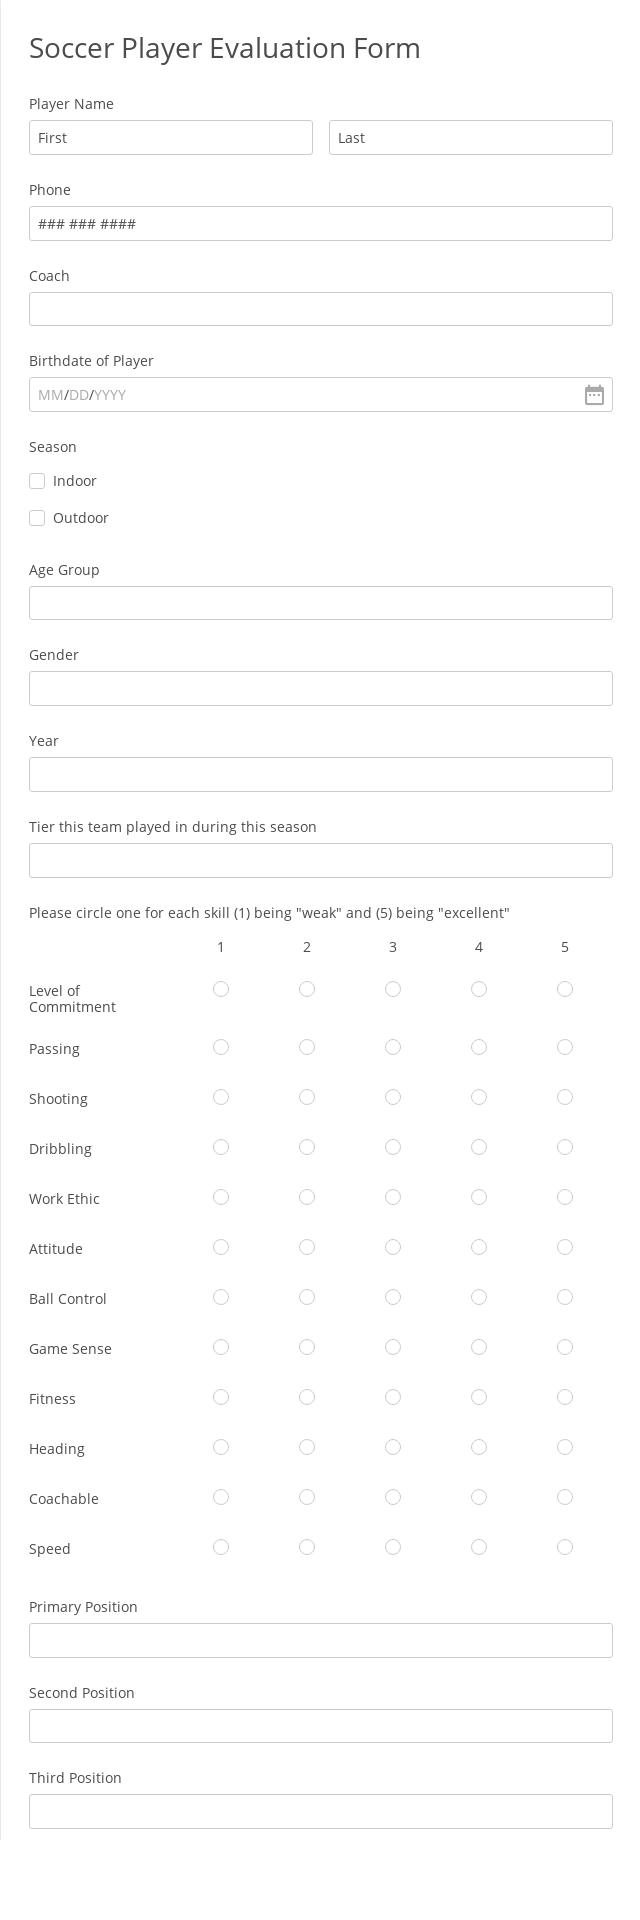 Online Soccer Player Evaluation Form Template 123 Form Builder